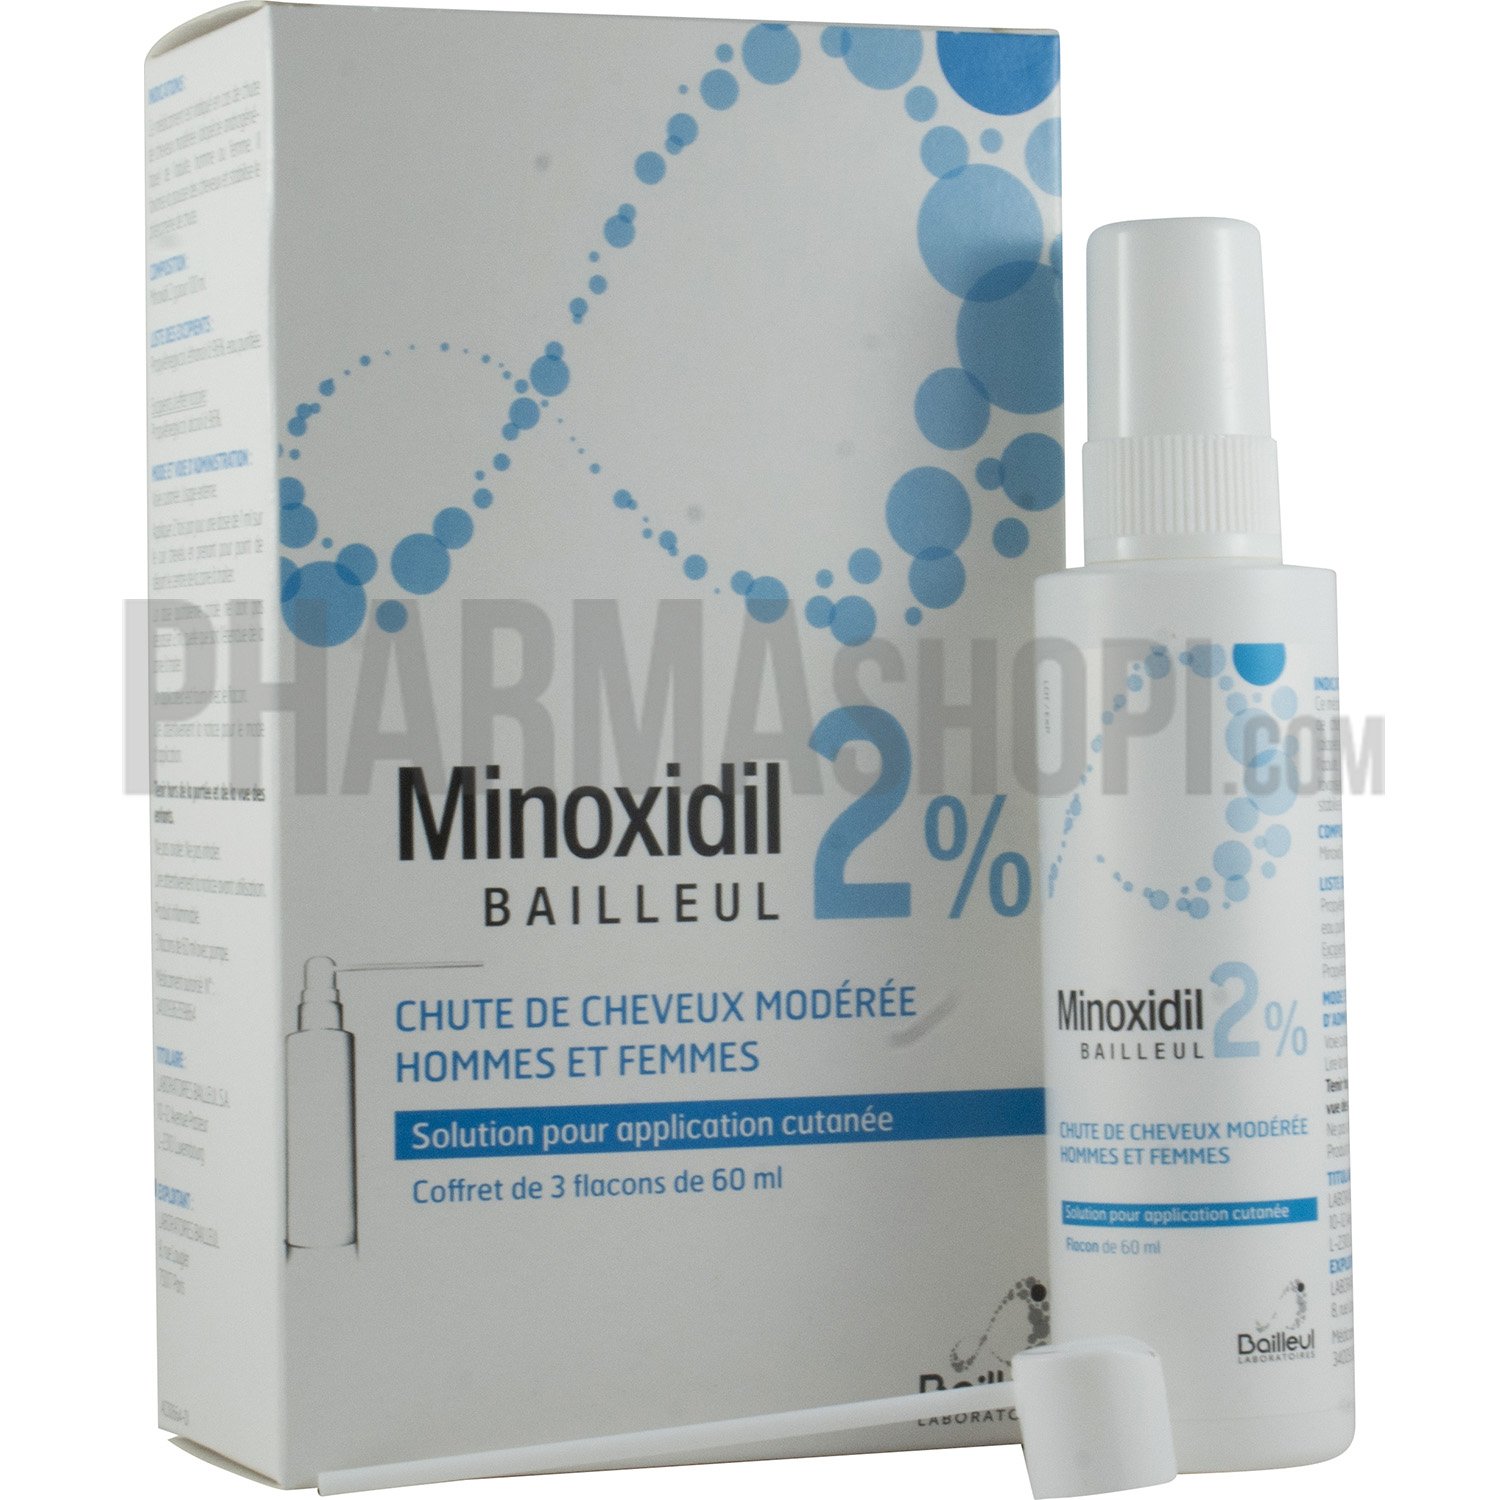 Minoxidil Bailleul 2 %, solution pour application cutanée - 3 flacons de 60 ml